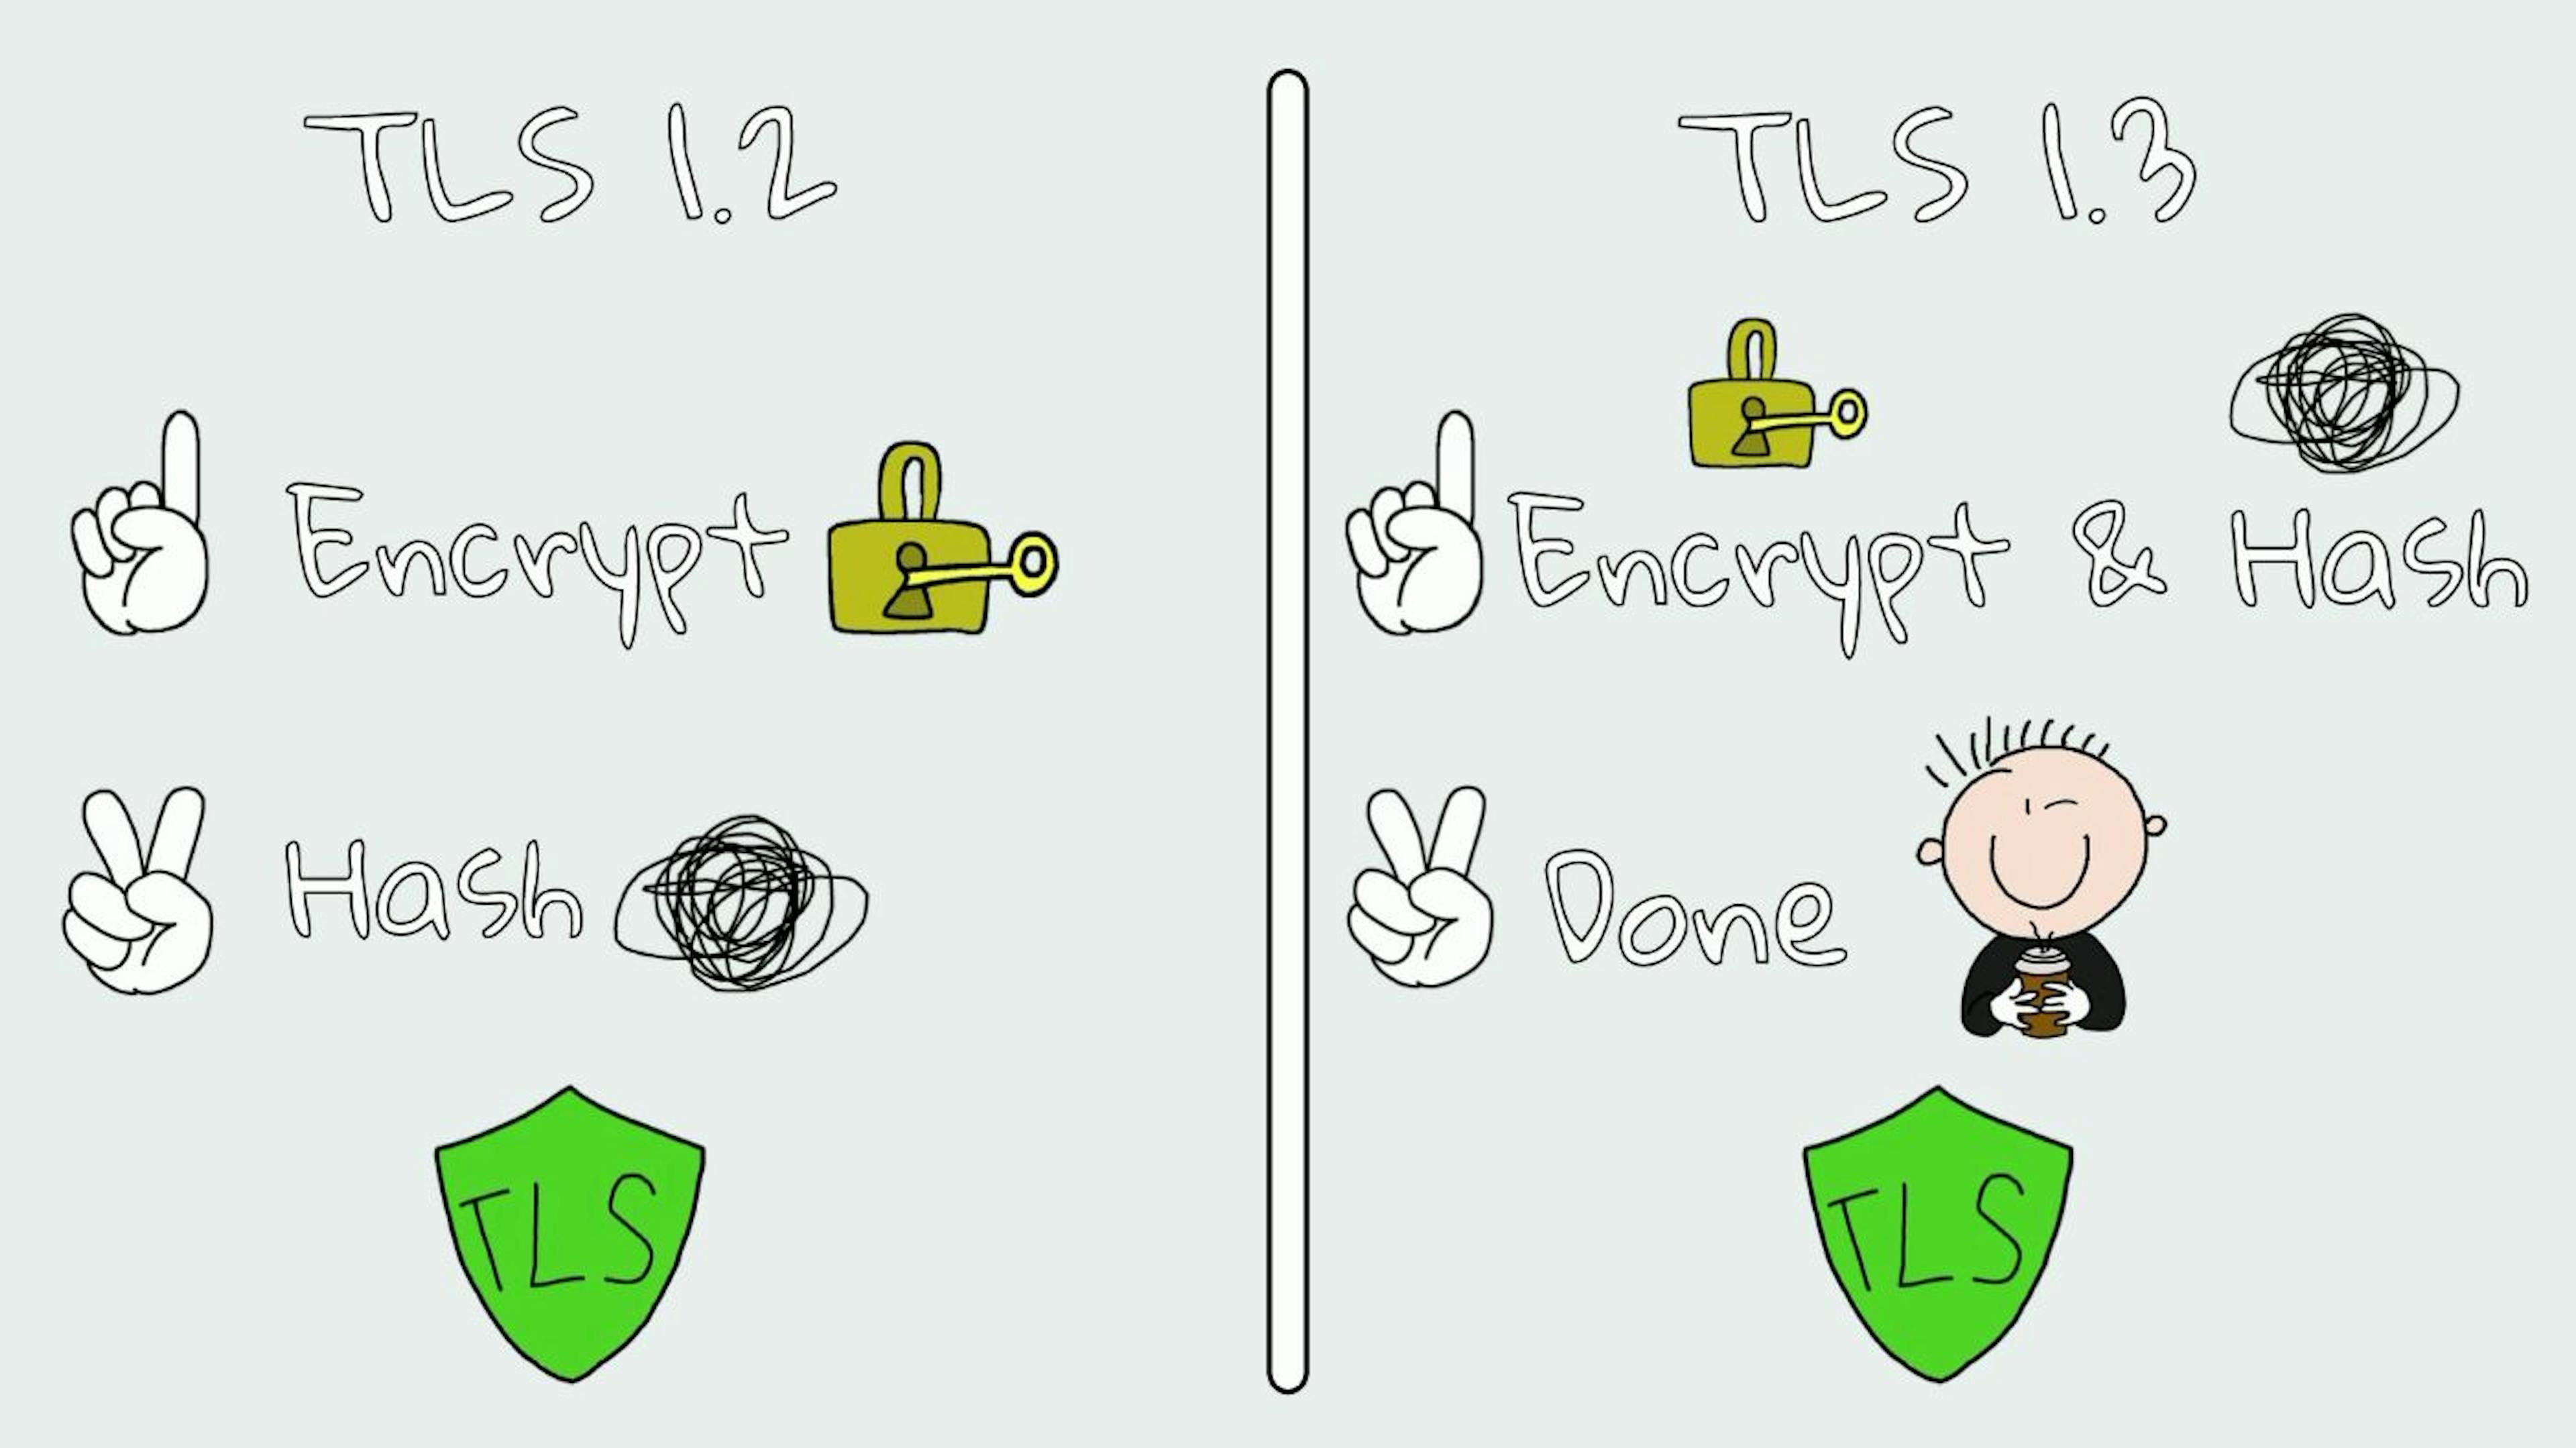 TLS 1.2 & TLS 1.3